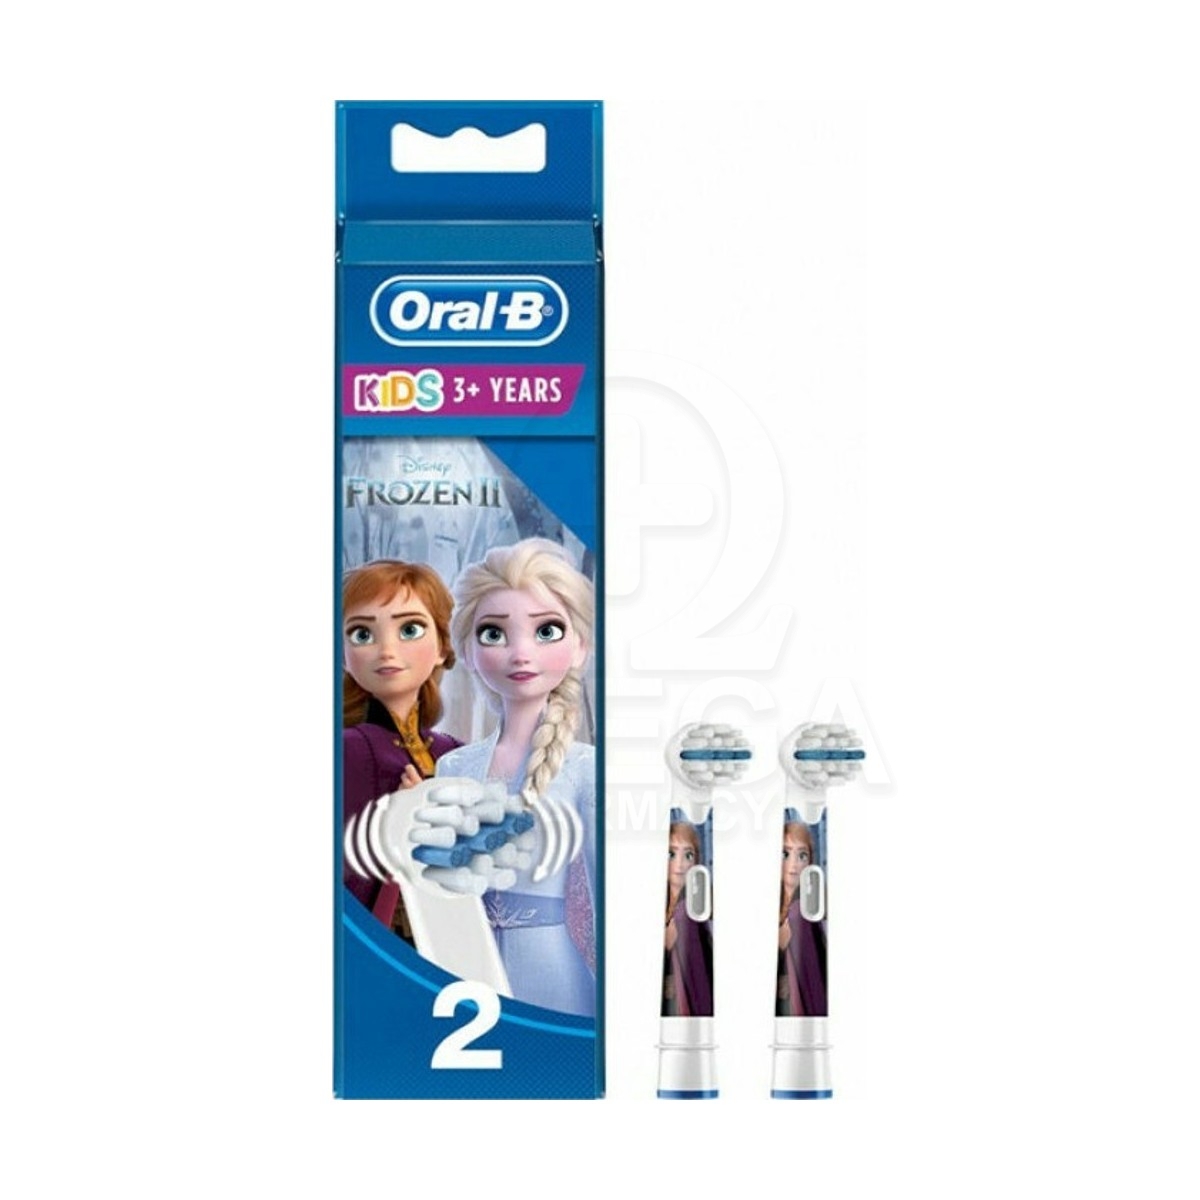 Oral-B Stages Power Kids 3+ Years Ανταλλακτικές Κεφαλές Frozen για Ηλεκτρική  Οδοντόβουρτσα 2τμχ